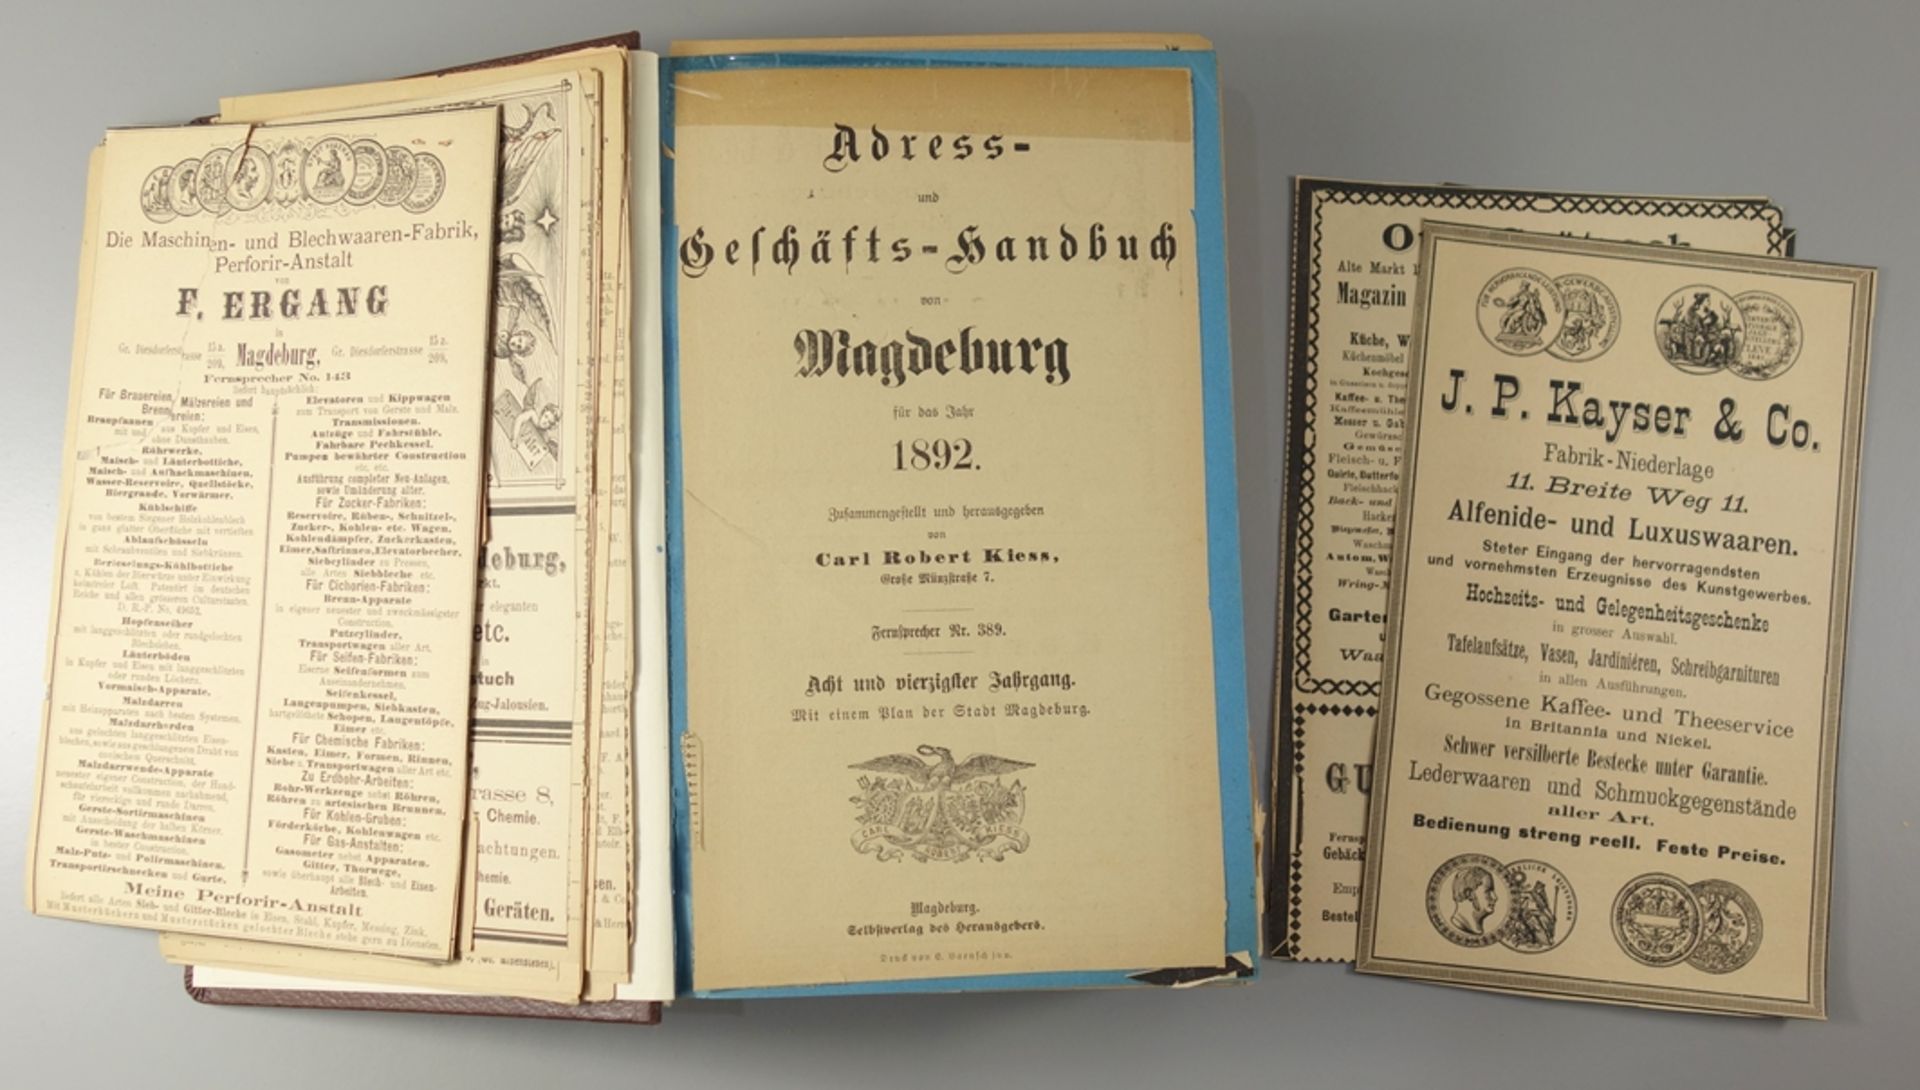 Adress- und Geschäfts-Handbuch von Magdeburg für das Jahr 1892, hrg. von Carl Robert Kiess,